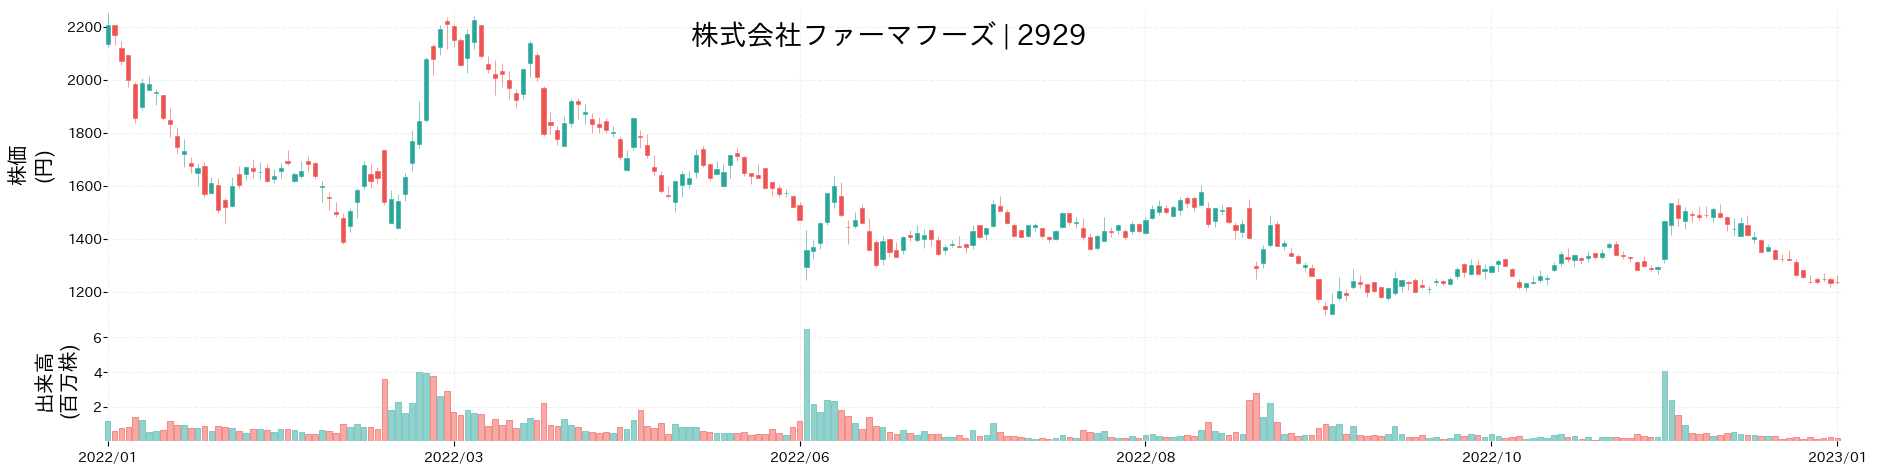 ファーマフーズの株価推移(2022)